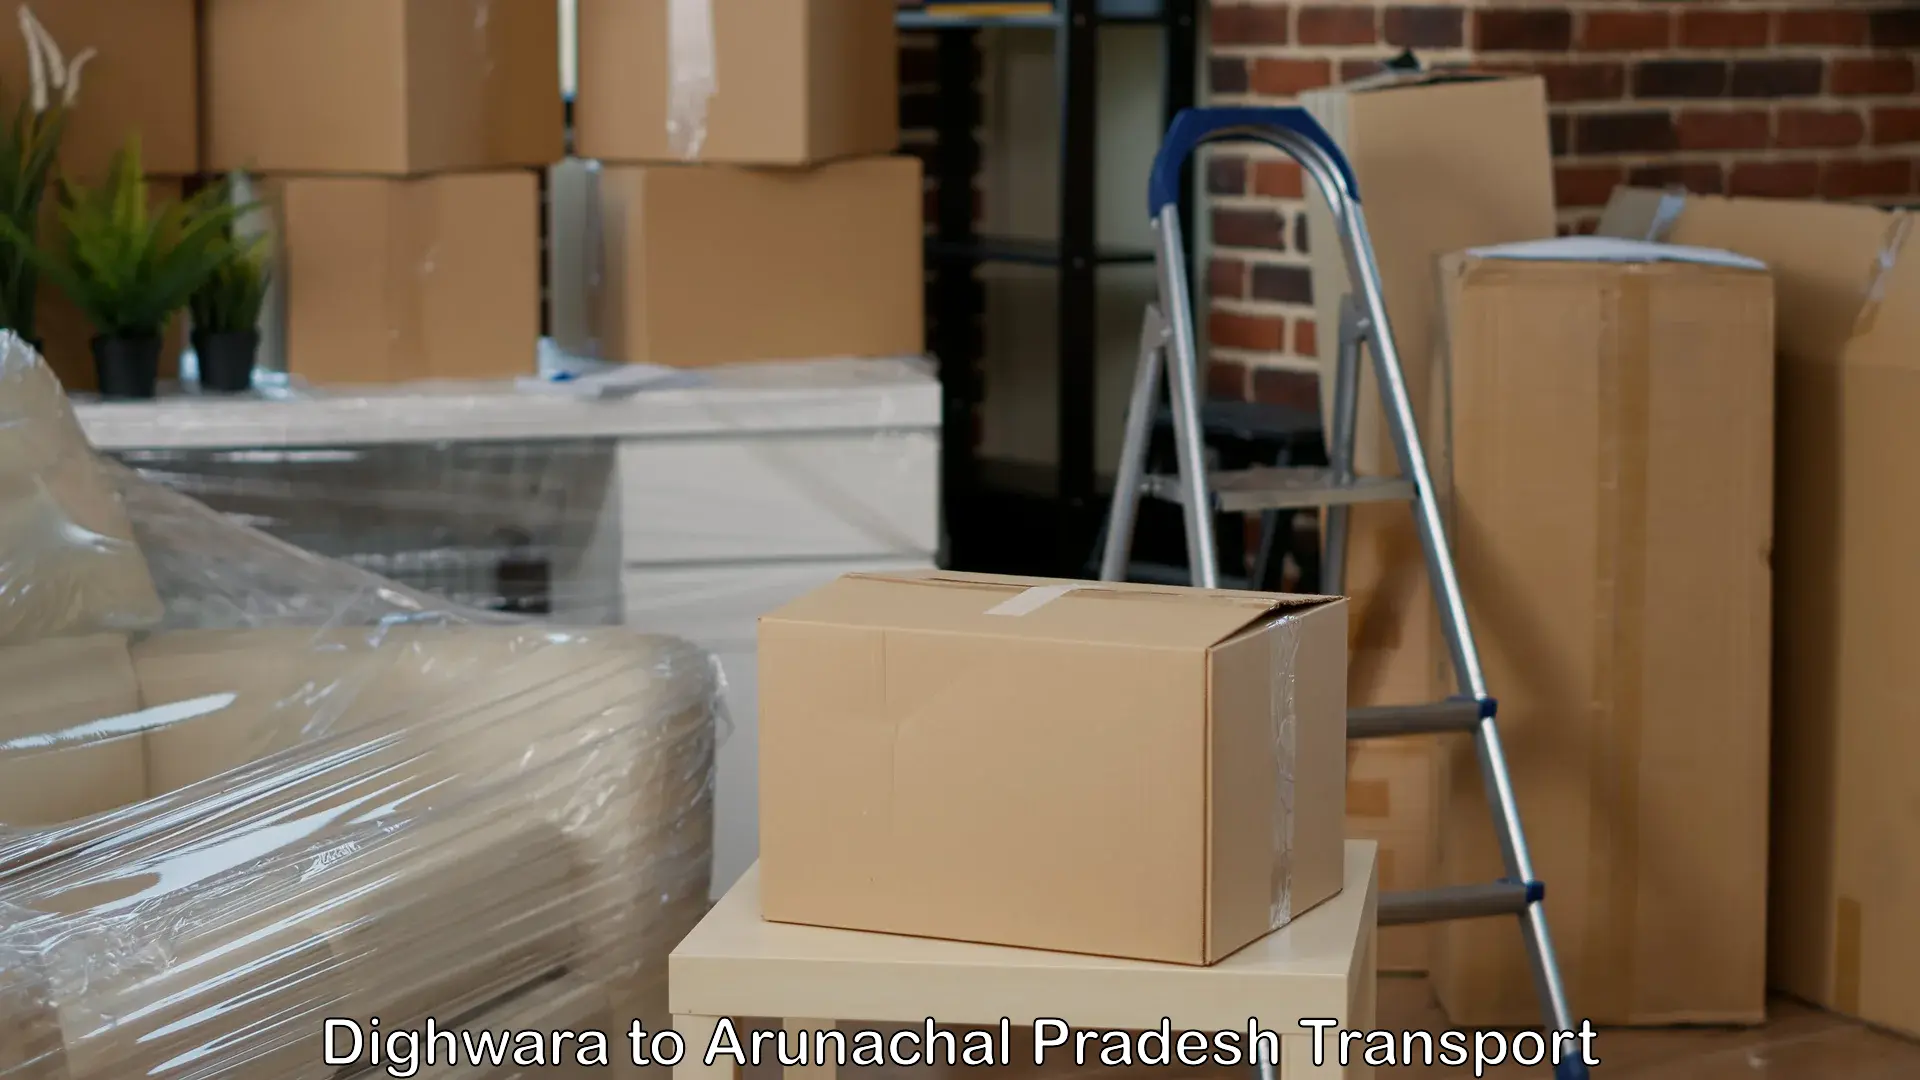 Goods transport services Dighwara to Lower Subansiri